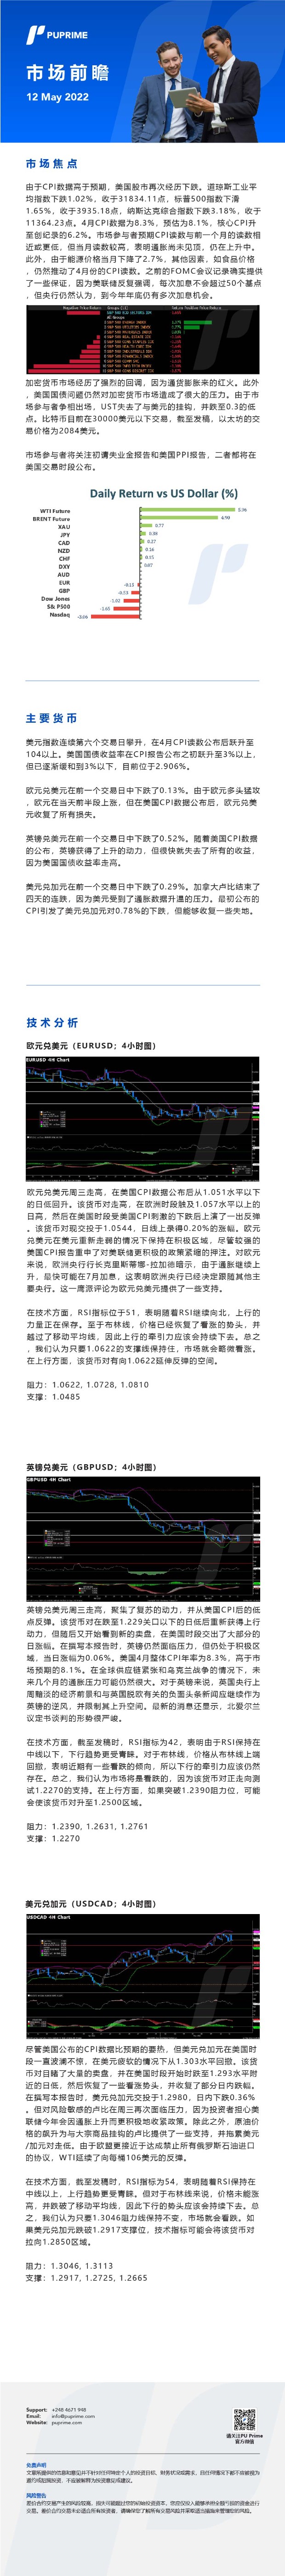 12052022 Daily Market Analysis__CHN.jpg